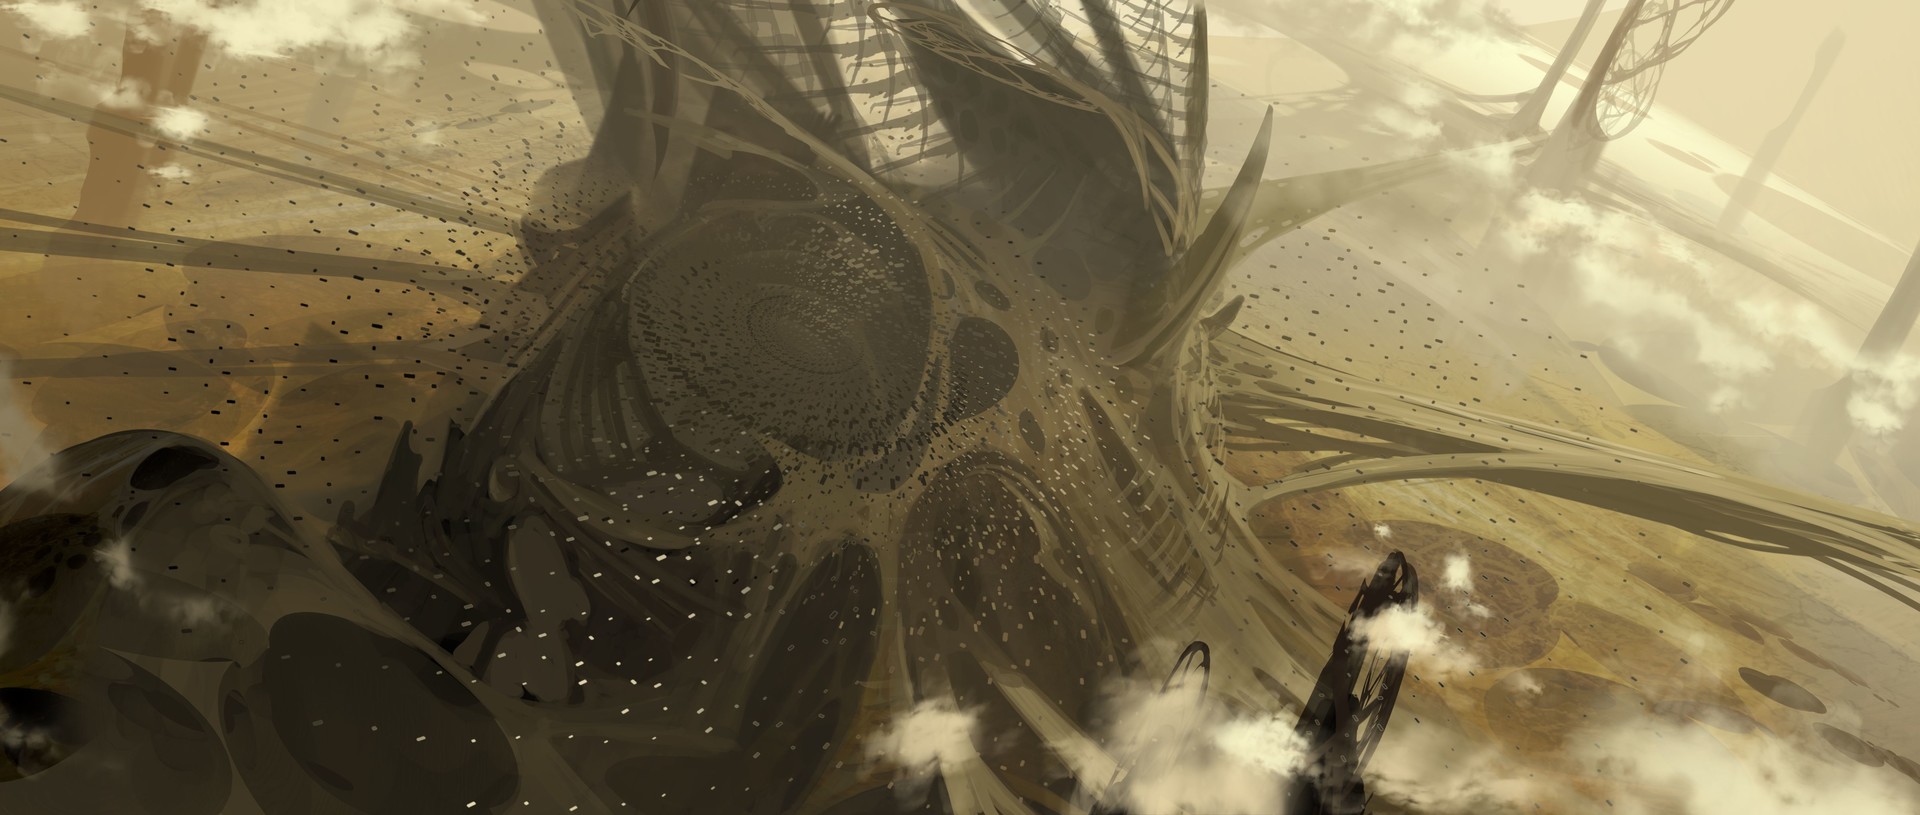 电影 Ender's Game 概念艺术作品-David Levy-36.jpg